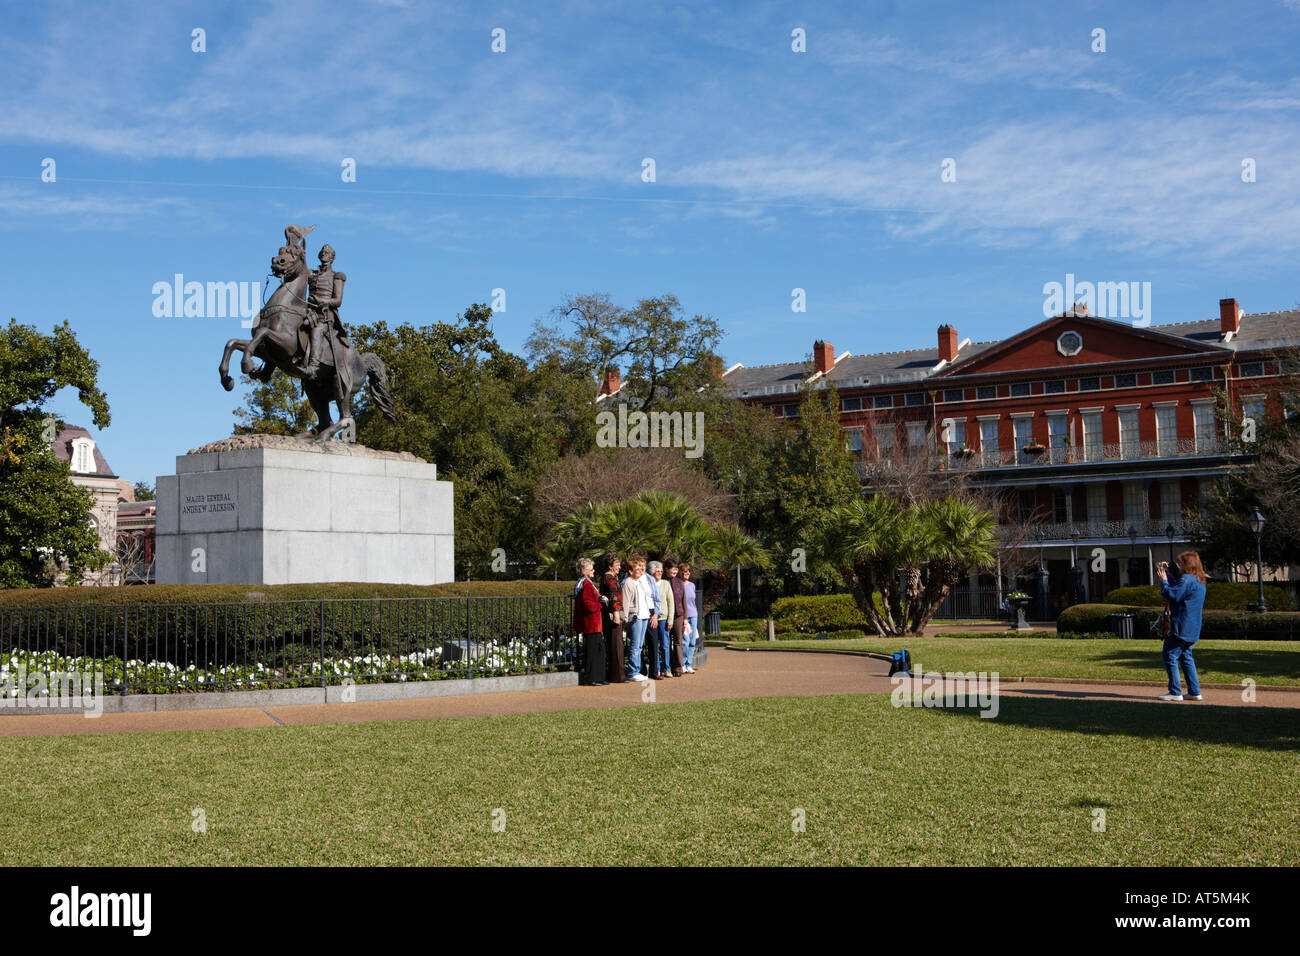 Les touristes en face du général Andrew Jackson statue sur Jackson Square. La Nouvelle-Orléans, Louisiane, Etats-Unis. Banque D'Images